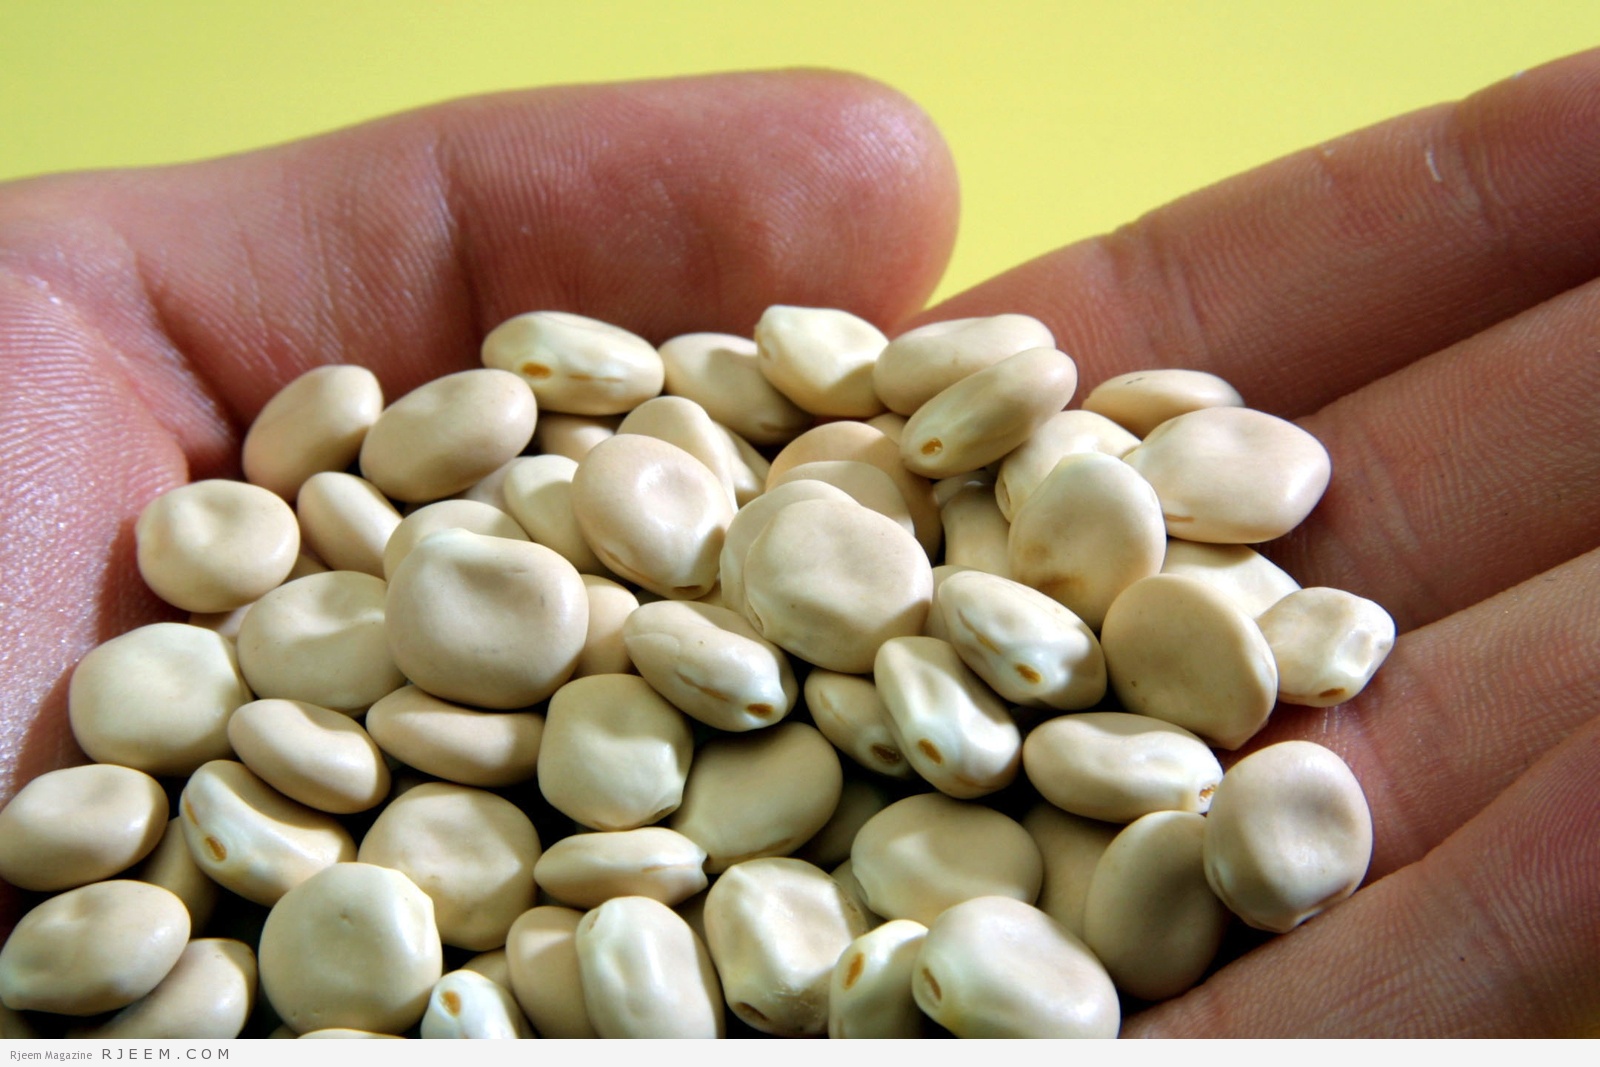 Aus den Samen von Lupinen lässt sich eine cremige Proteinsuspension gewinnen, die sich für die Herstellung fettarmer Wurstwaren eignet.